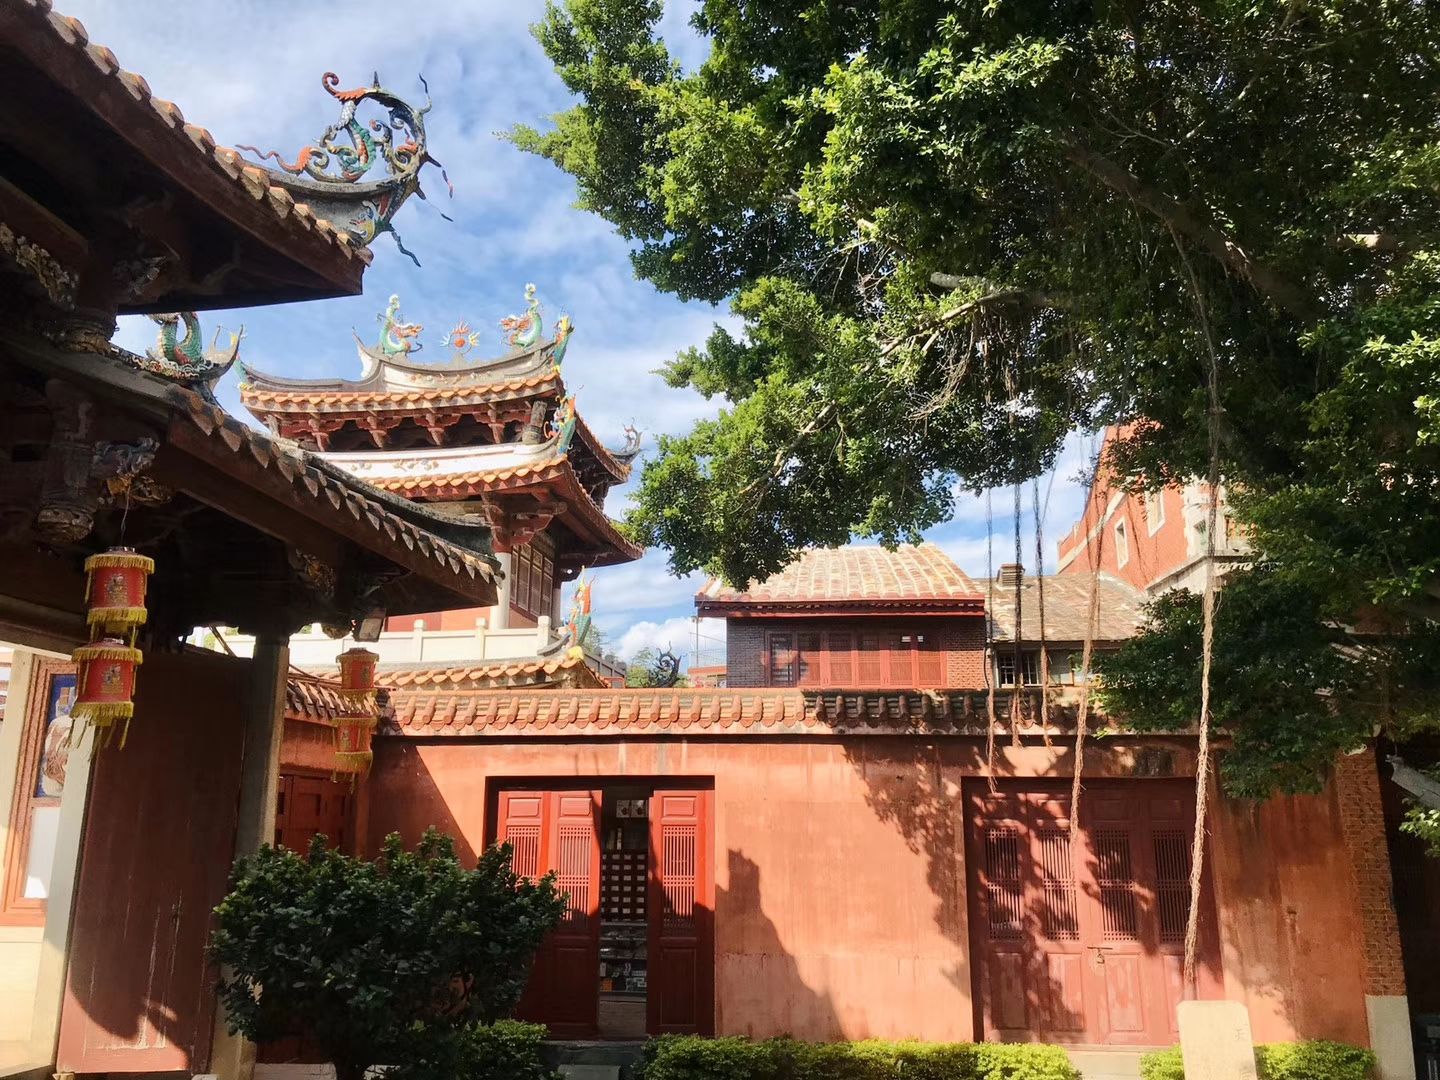 中国保存最完整规模最大的妈祖庙,泉州天后宫